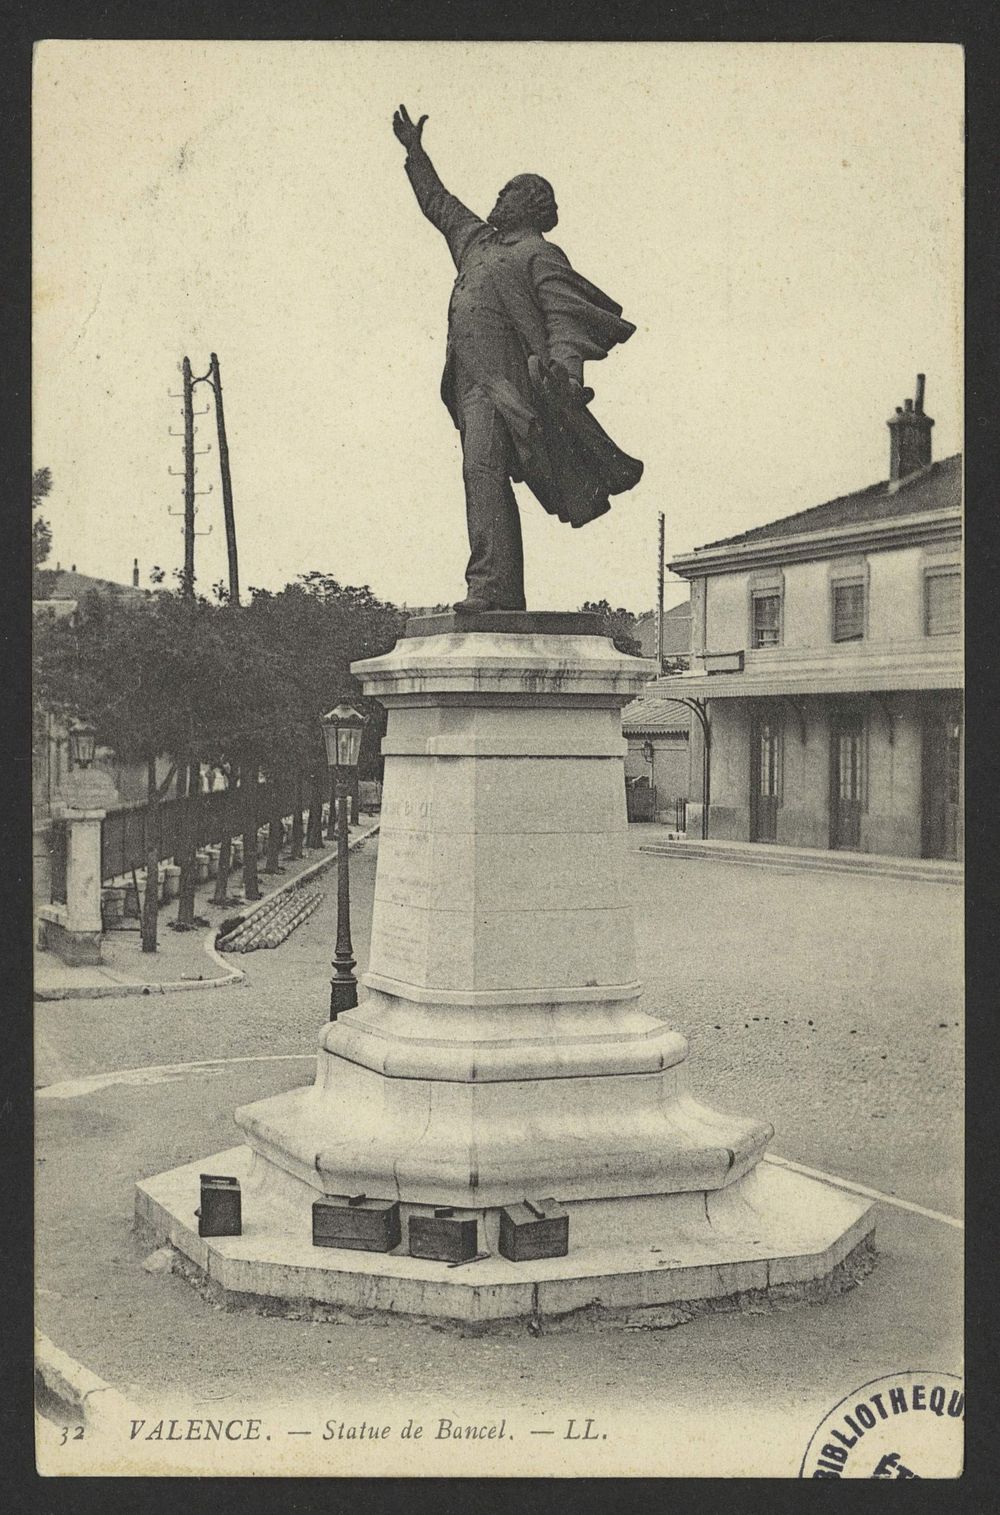 Valence - Statue de Bancel